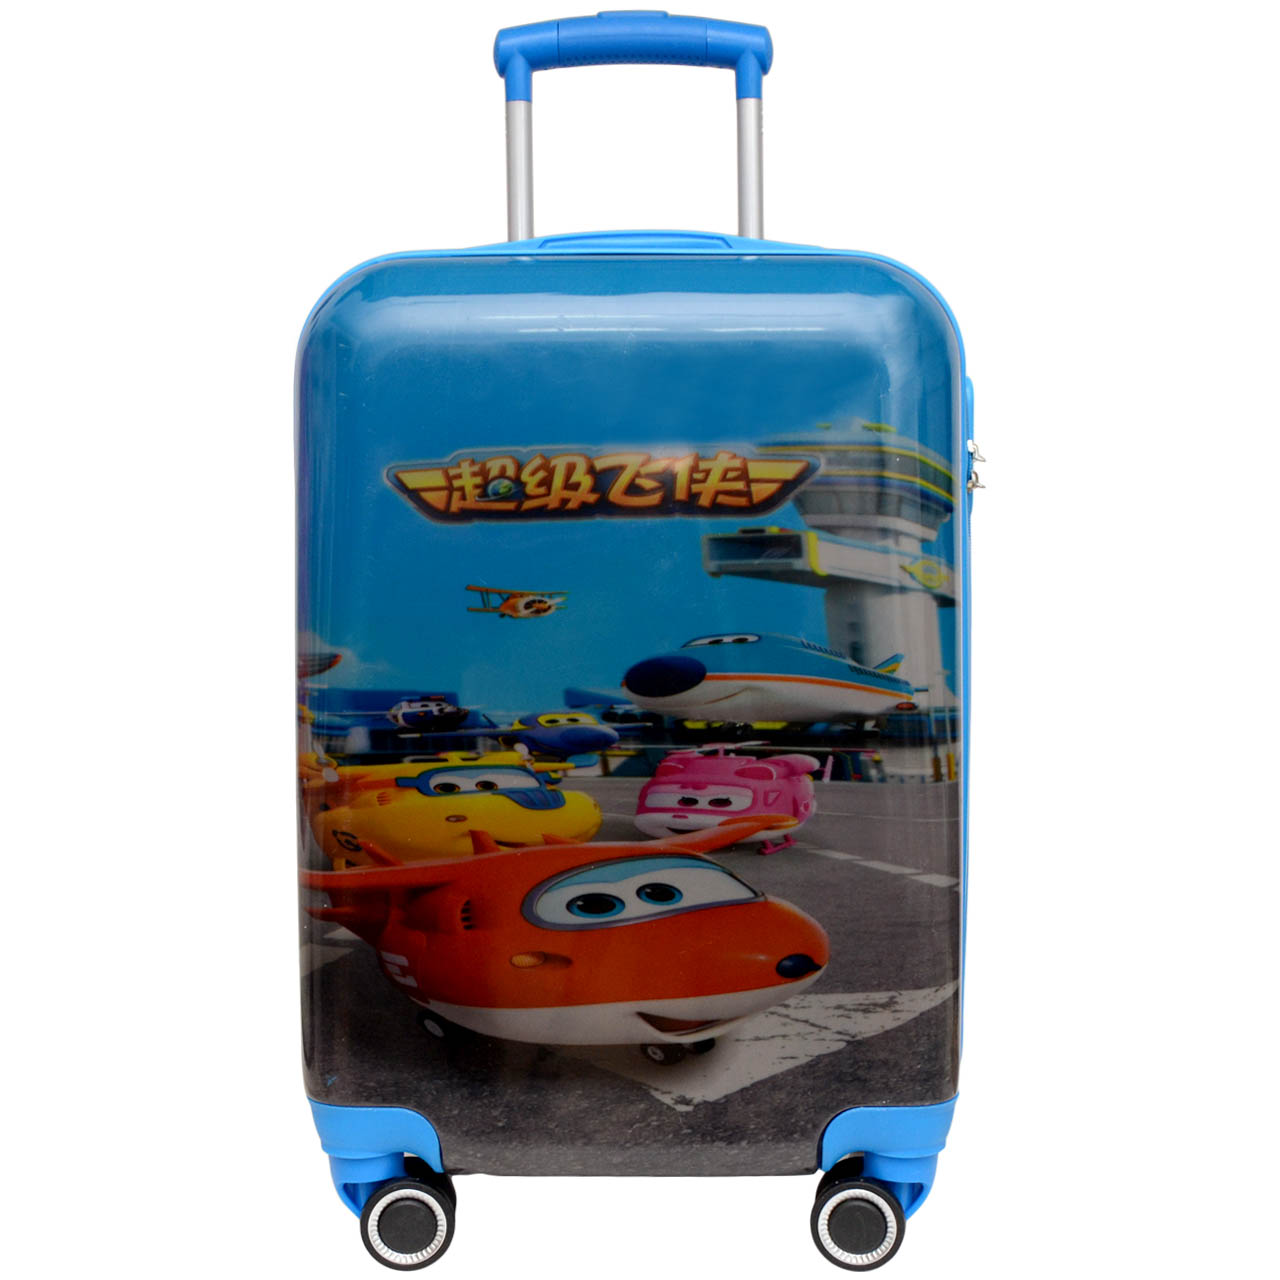 چمدان کودک مدل JIMBO کد 20 - 700368